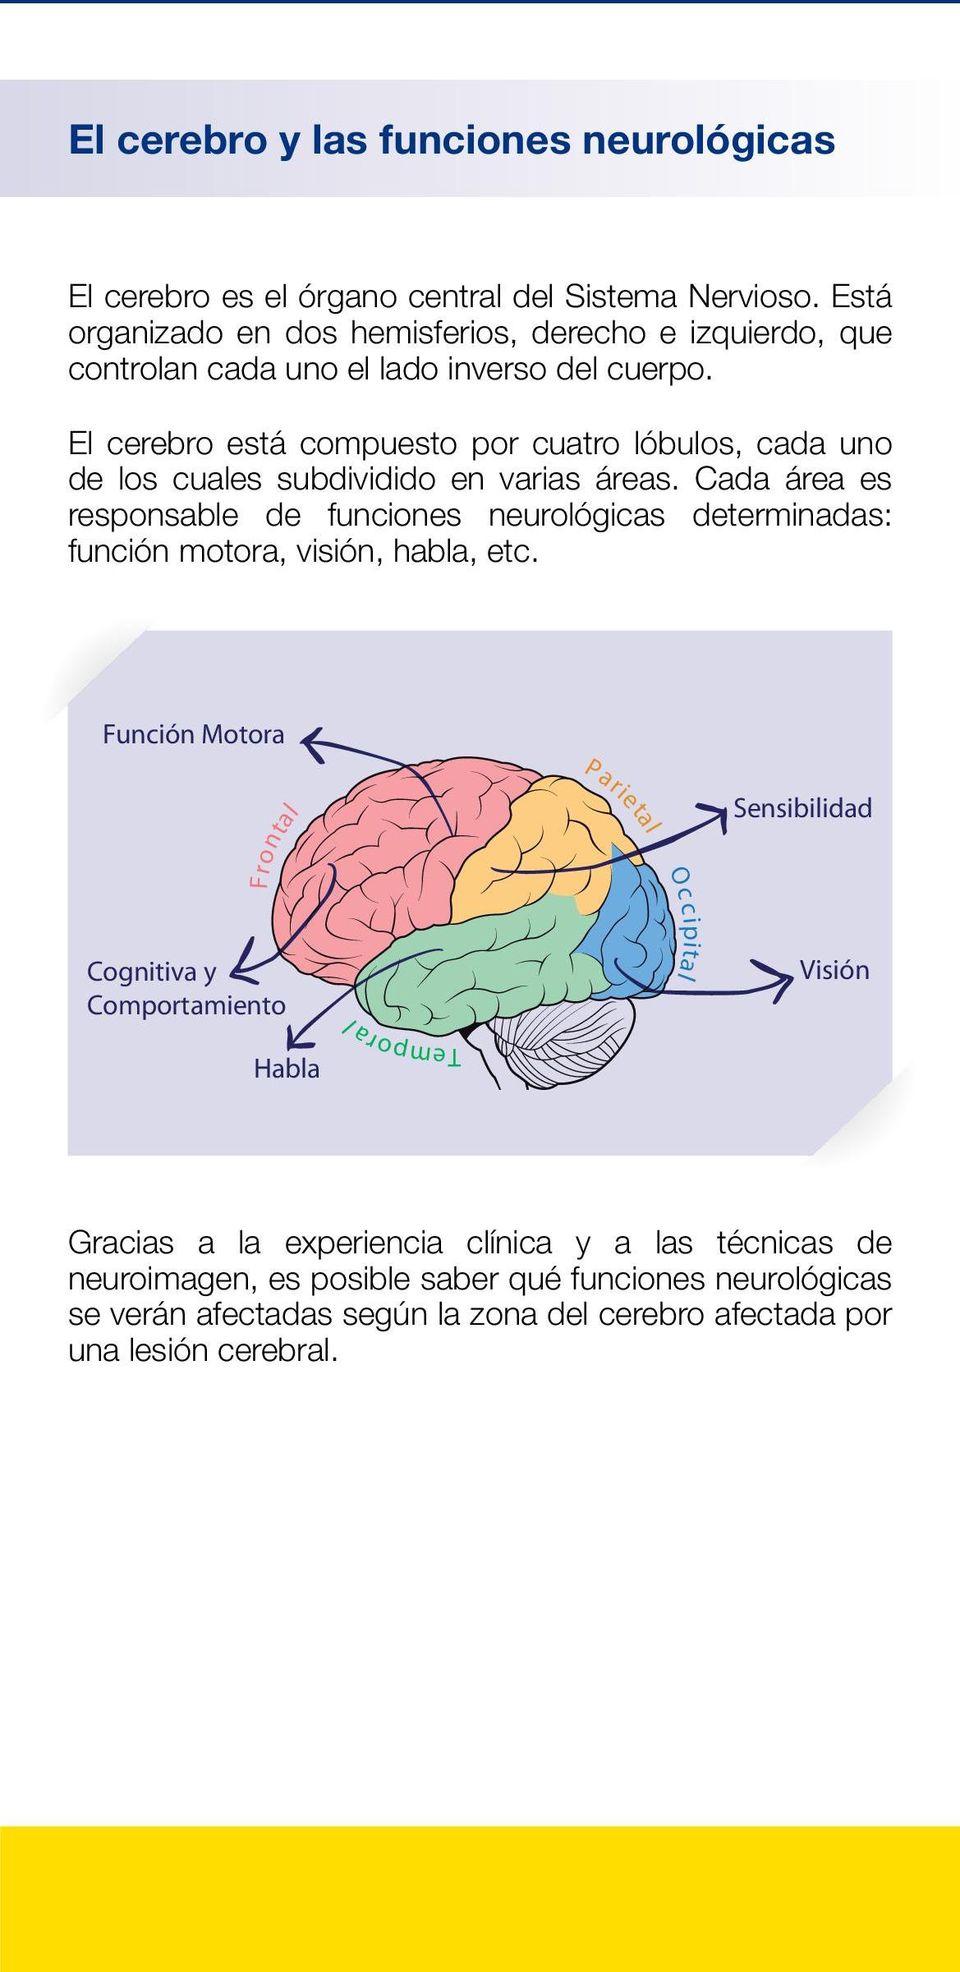 El cerebro está compuesto por cuatro lóbulos, cada uno de los cuales subdividido en varias áreas.